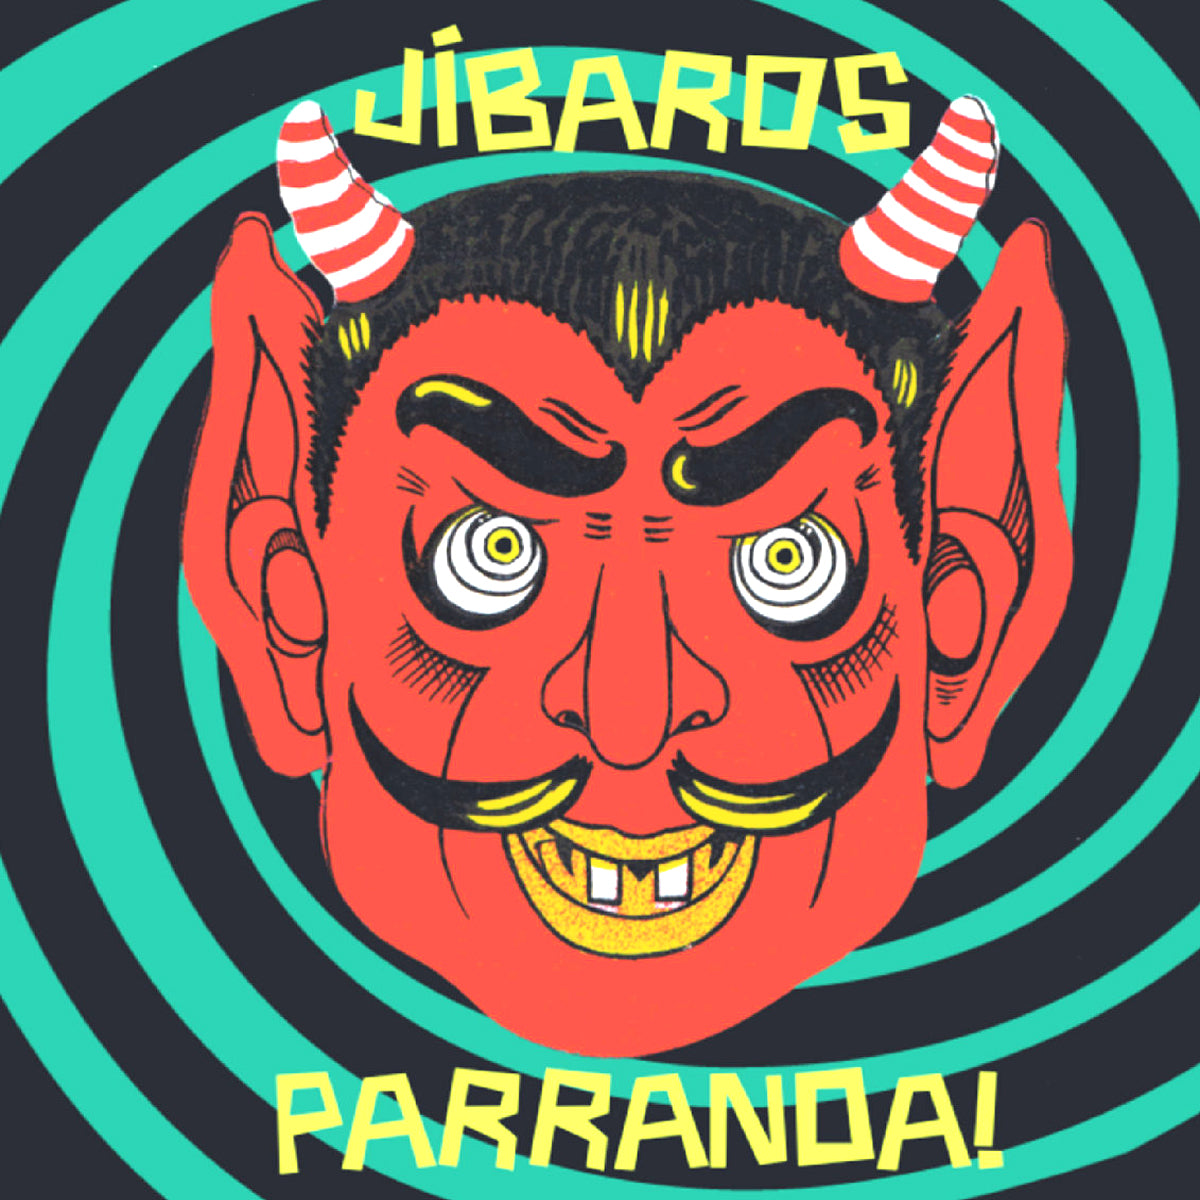 Jibaros- Parranda! 7” ~VERY RARE / 150 PRESSED!